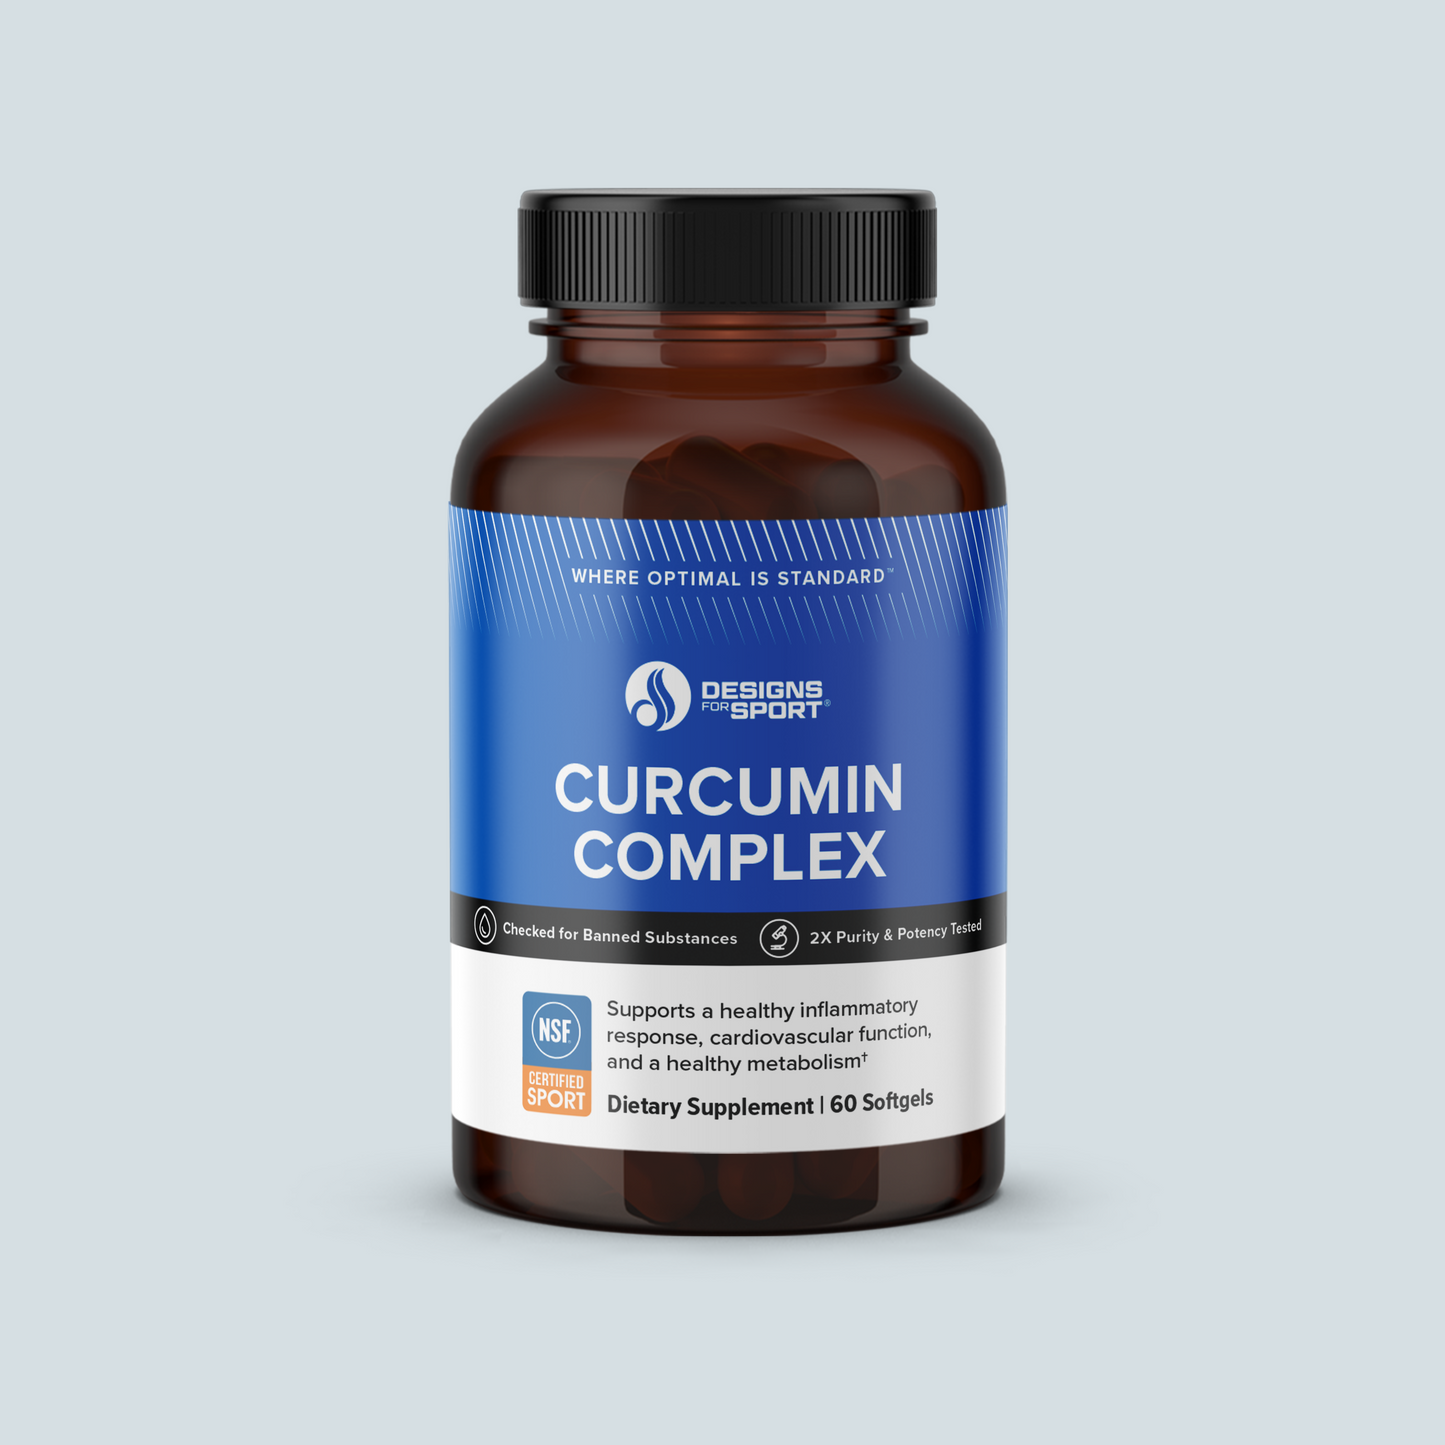 CURCUMIN COMPLEX SAVE 10%